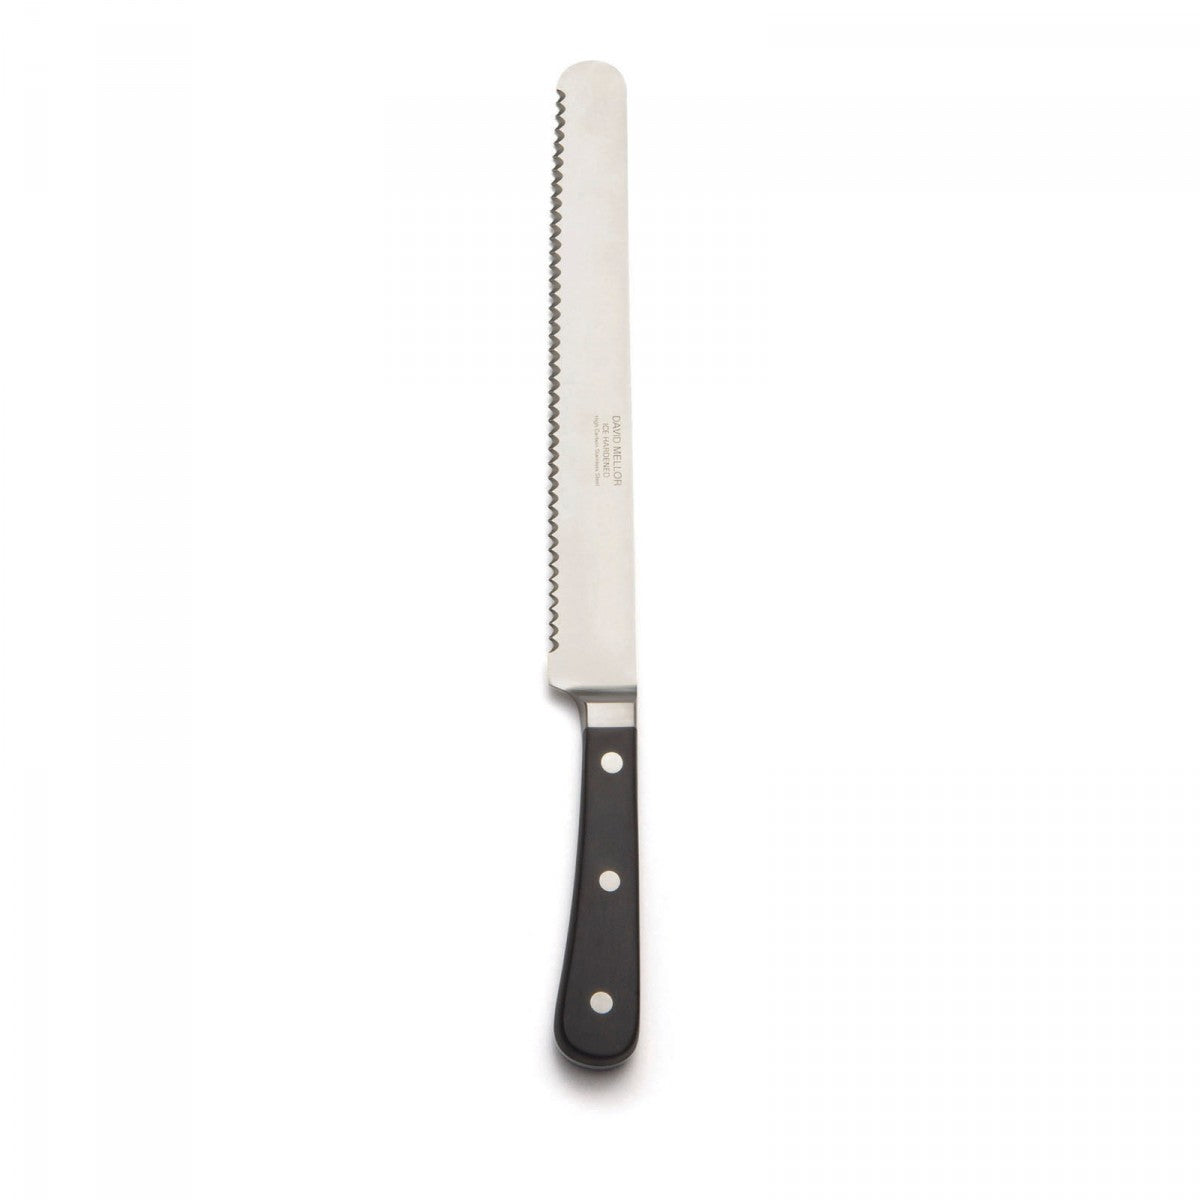 David Mellor - Provençal Bread Knife